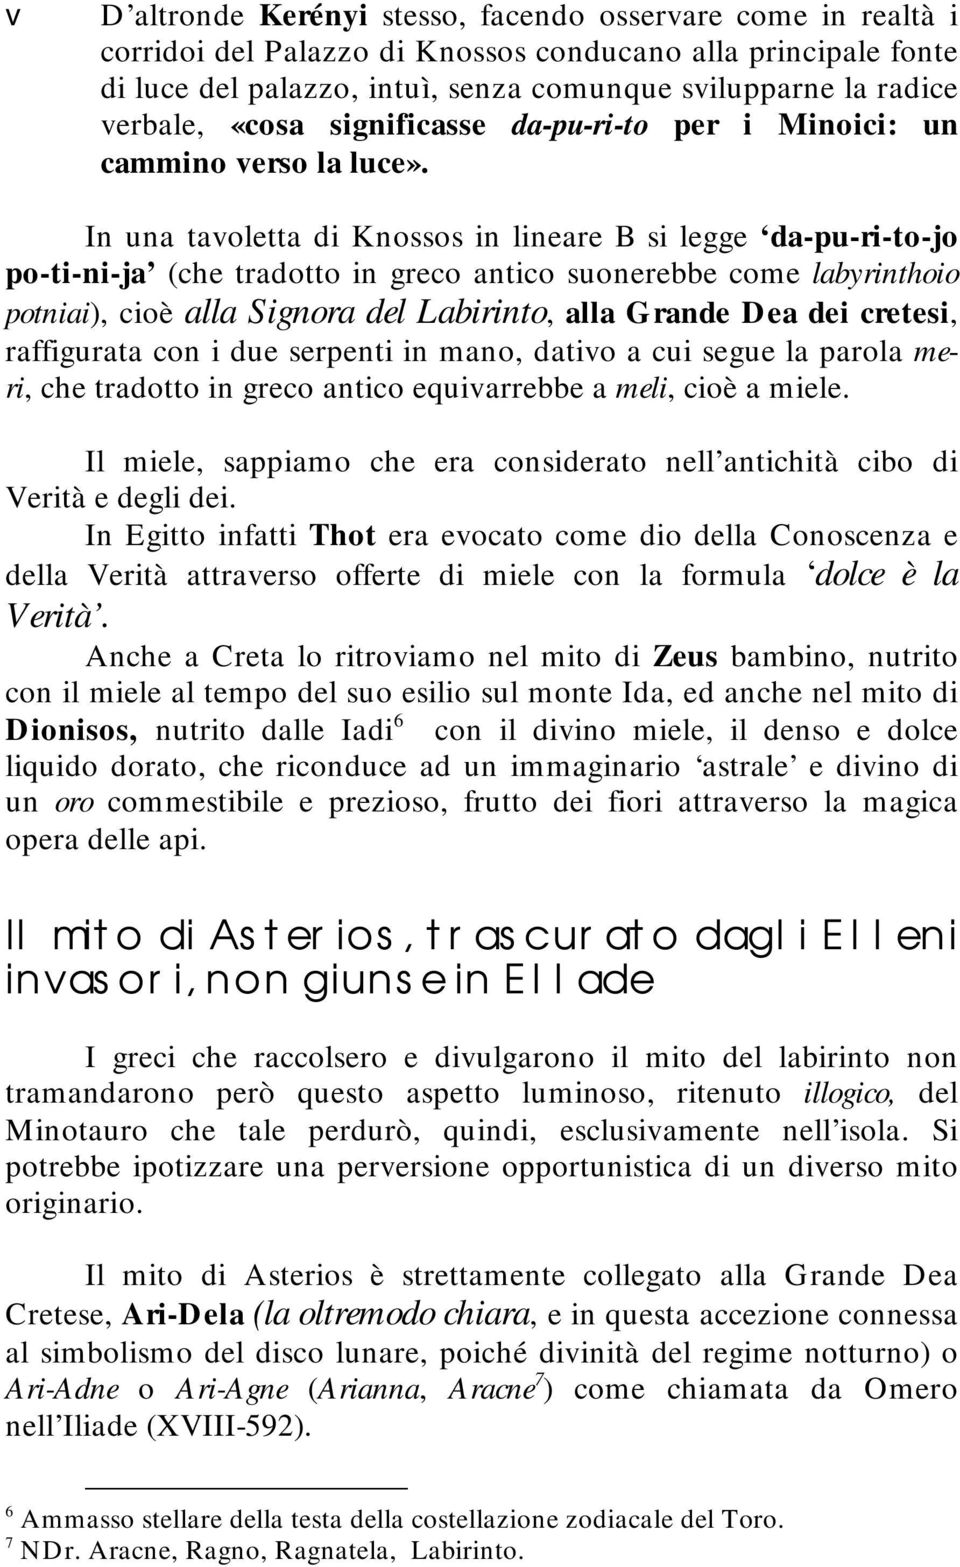 In una taoletta di Knossos in lineare B si legge da-pu-ri-to-jo po-ti-ni-ja (che tradotto in greco antico suonerebbe come labyrinthoio potniai), cioè alla Signora del Labirinto, alla Grande Dea dei